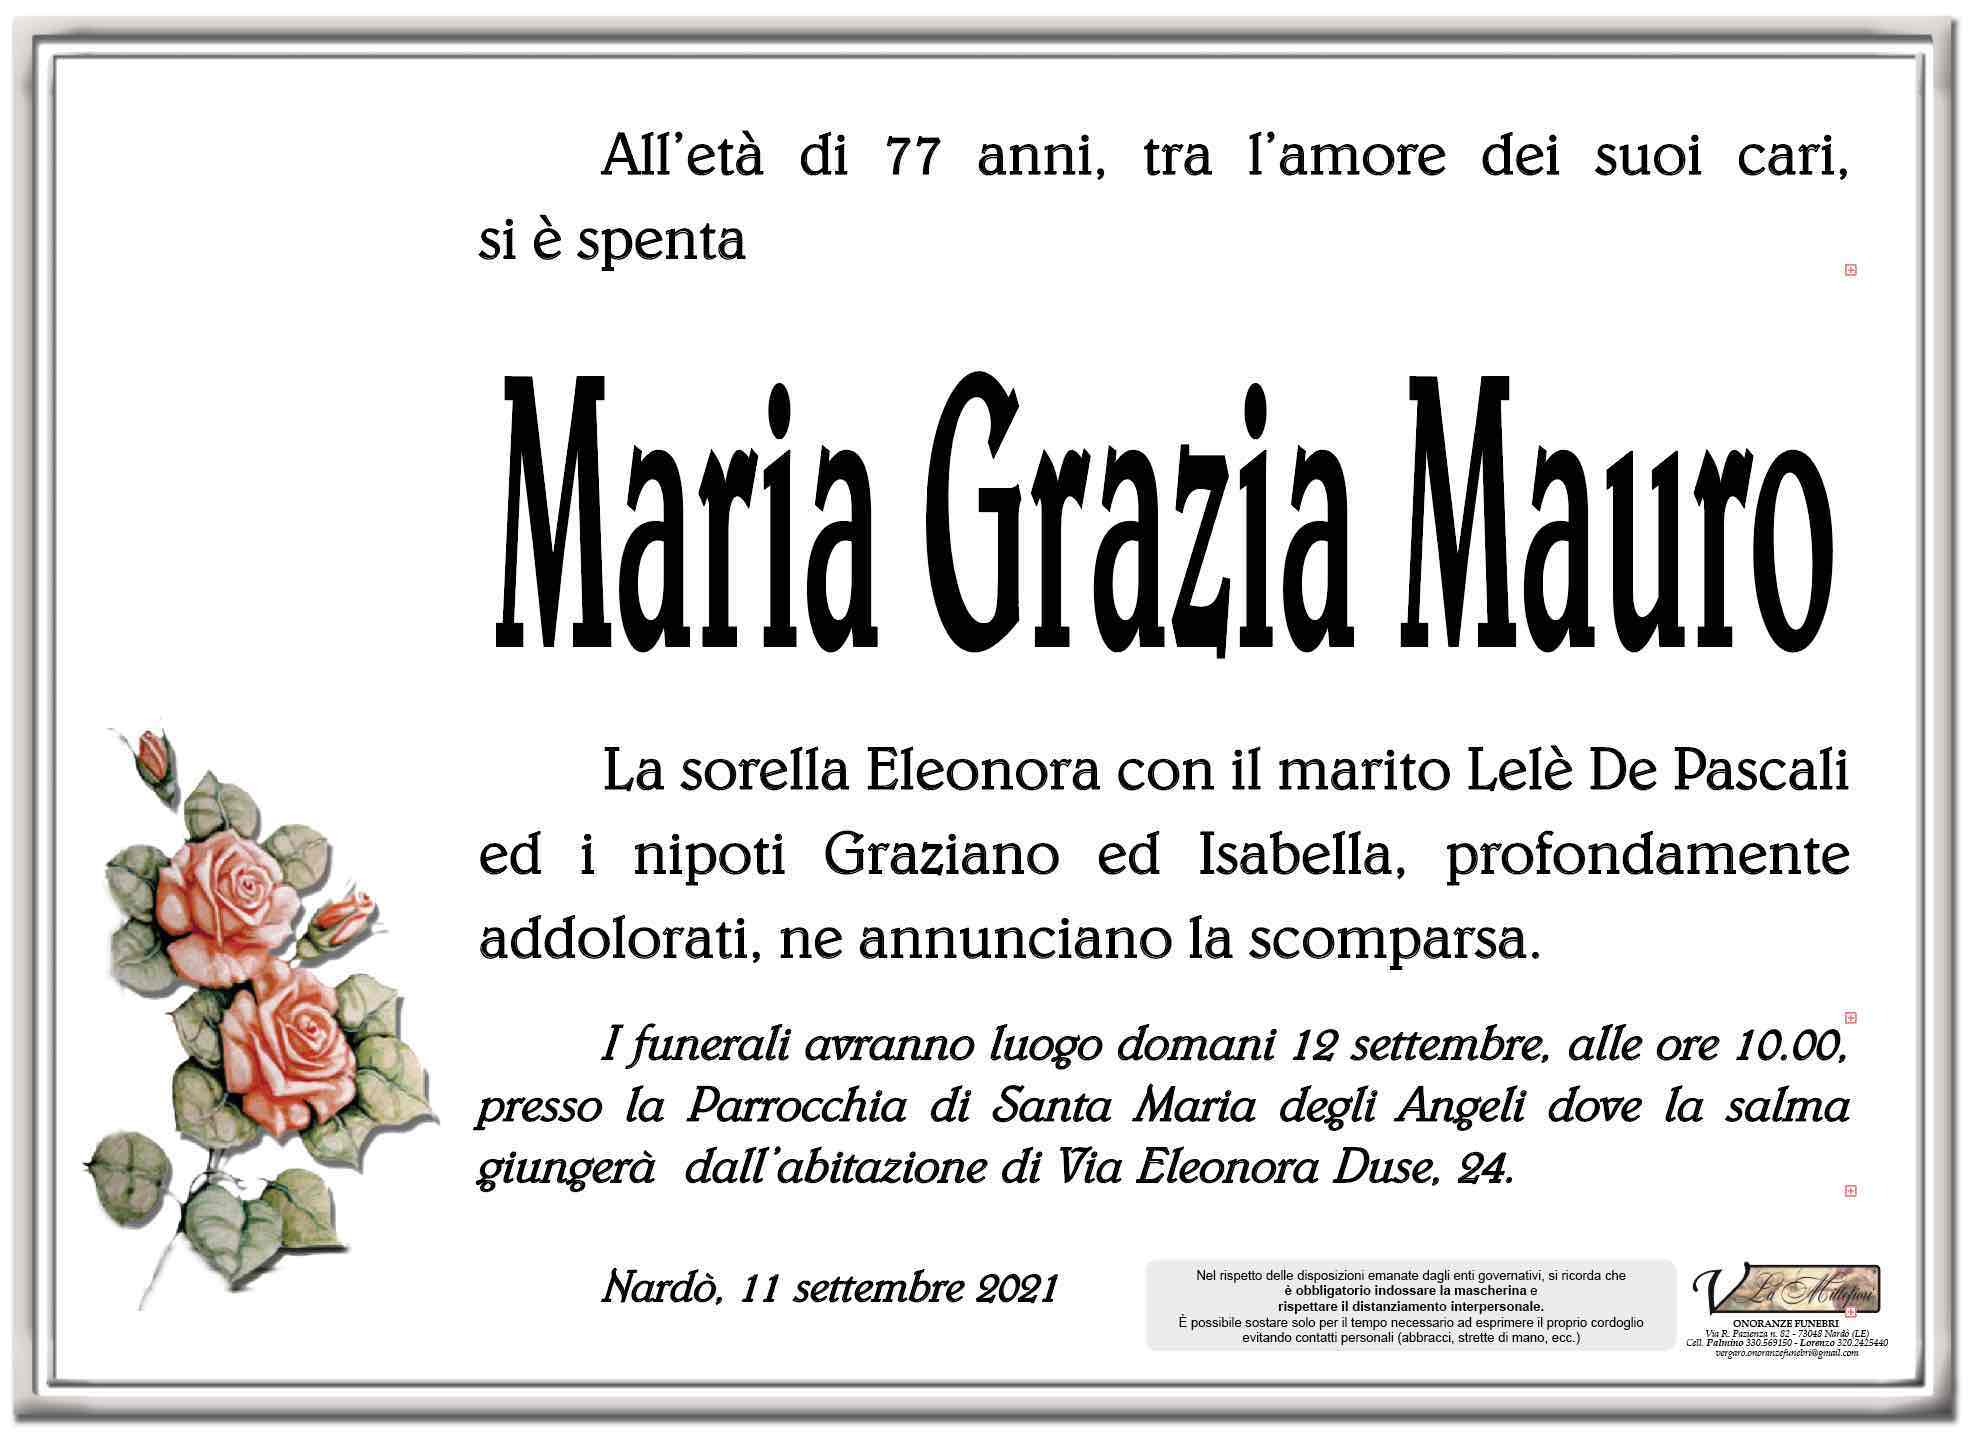 Maria Grazia Mauro